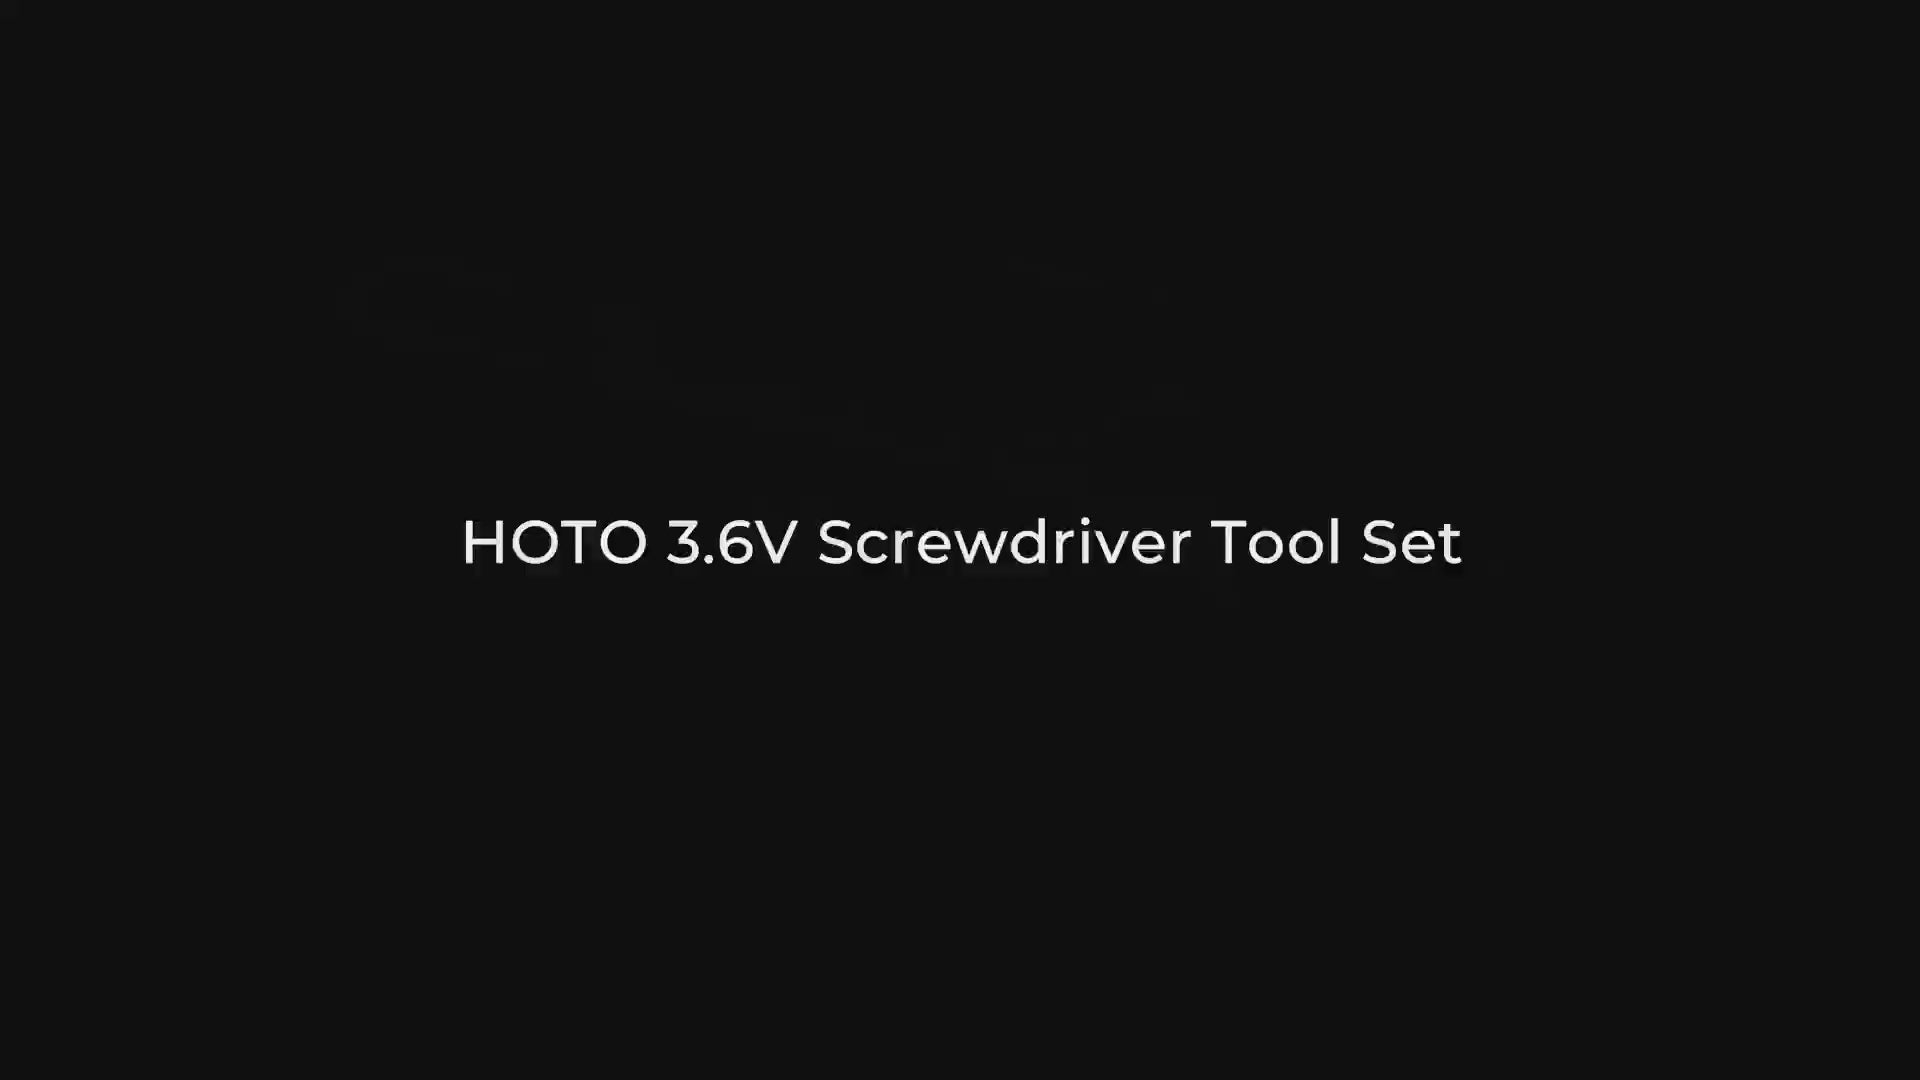 3.6V SCREWDRIVER TOOL SET / HOTO 5-PIECE TOOL SET